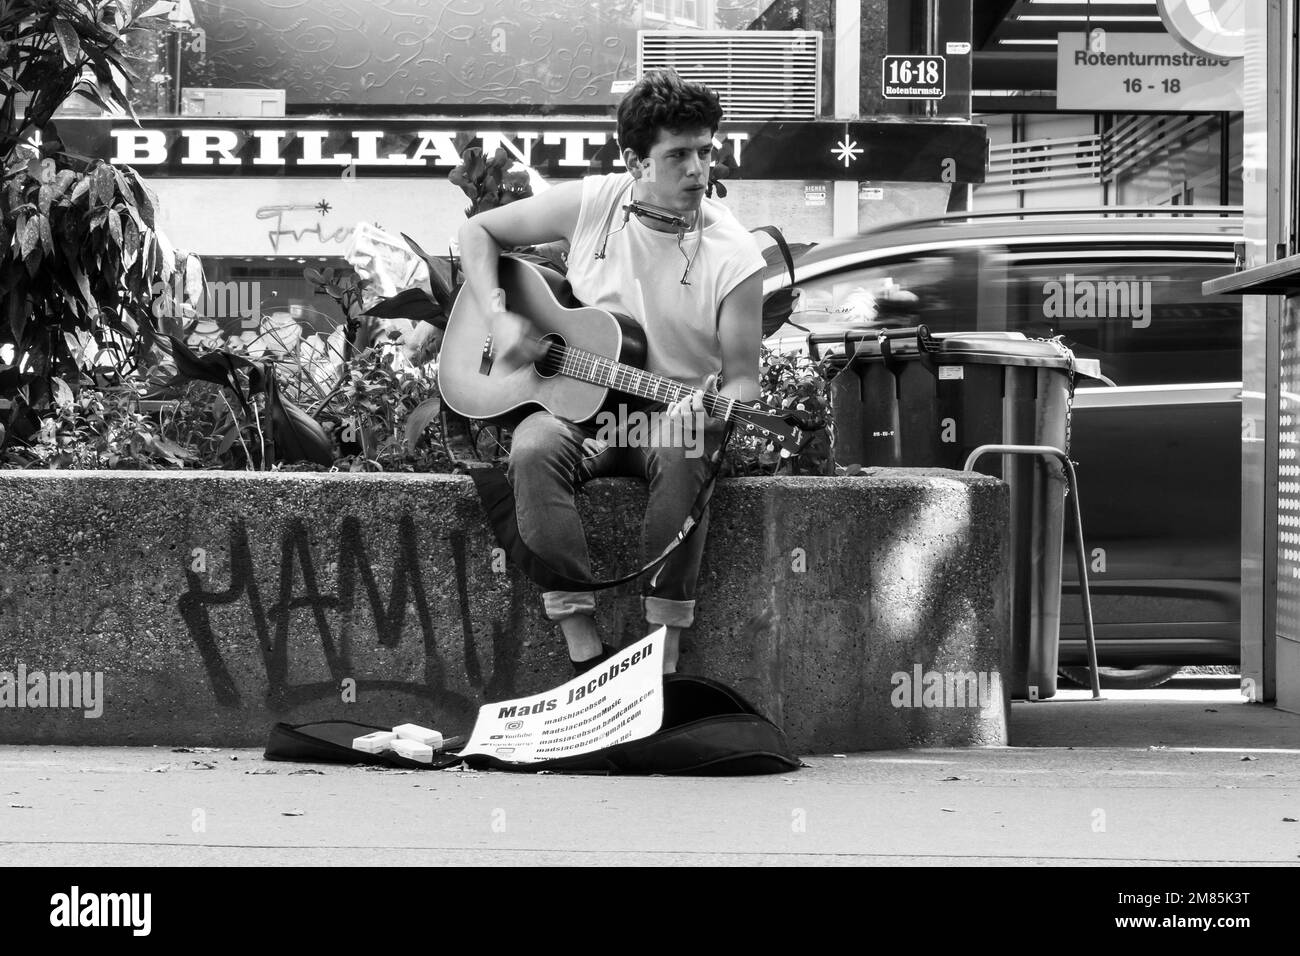 Mads Jacobsen, busseur, jouant de la guitare assis sur le mur près du stand de hot dog sur la Rotenturmstrasse à Vienne pendant que le couple achète le déjeuner Banque D'Images